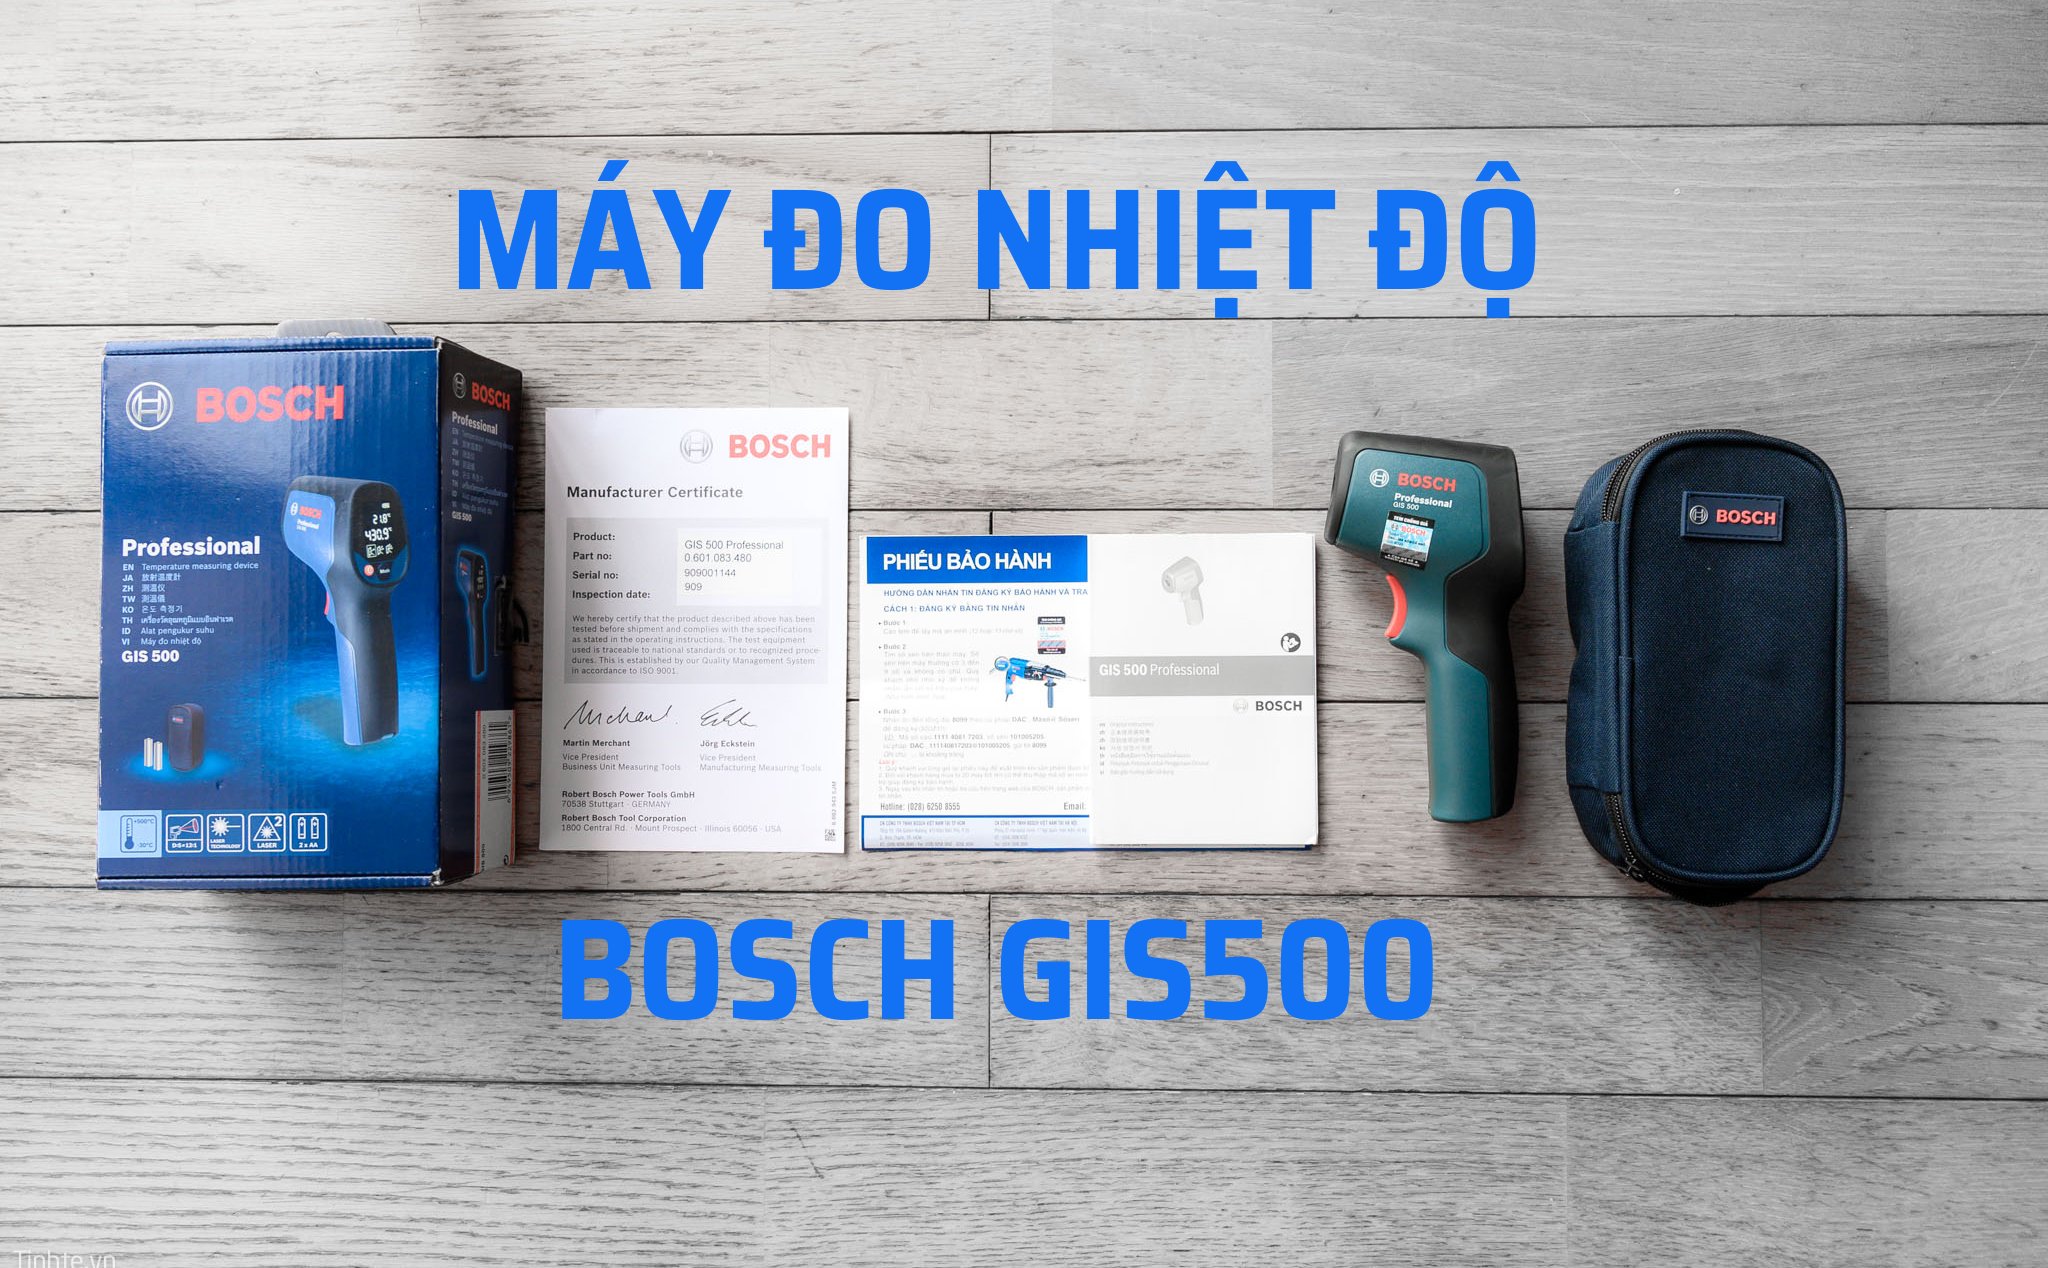 Trên tay máy đo nhiệt độ chuyên nghiệp Bosch GIS500: Nhỏ gọn, cầm chắc tay, đo nhanh